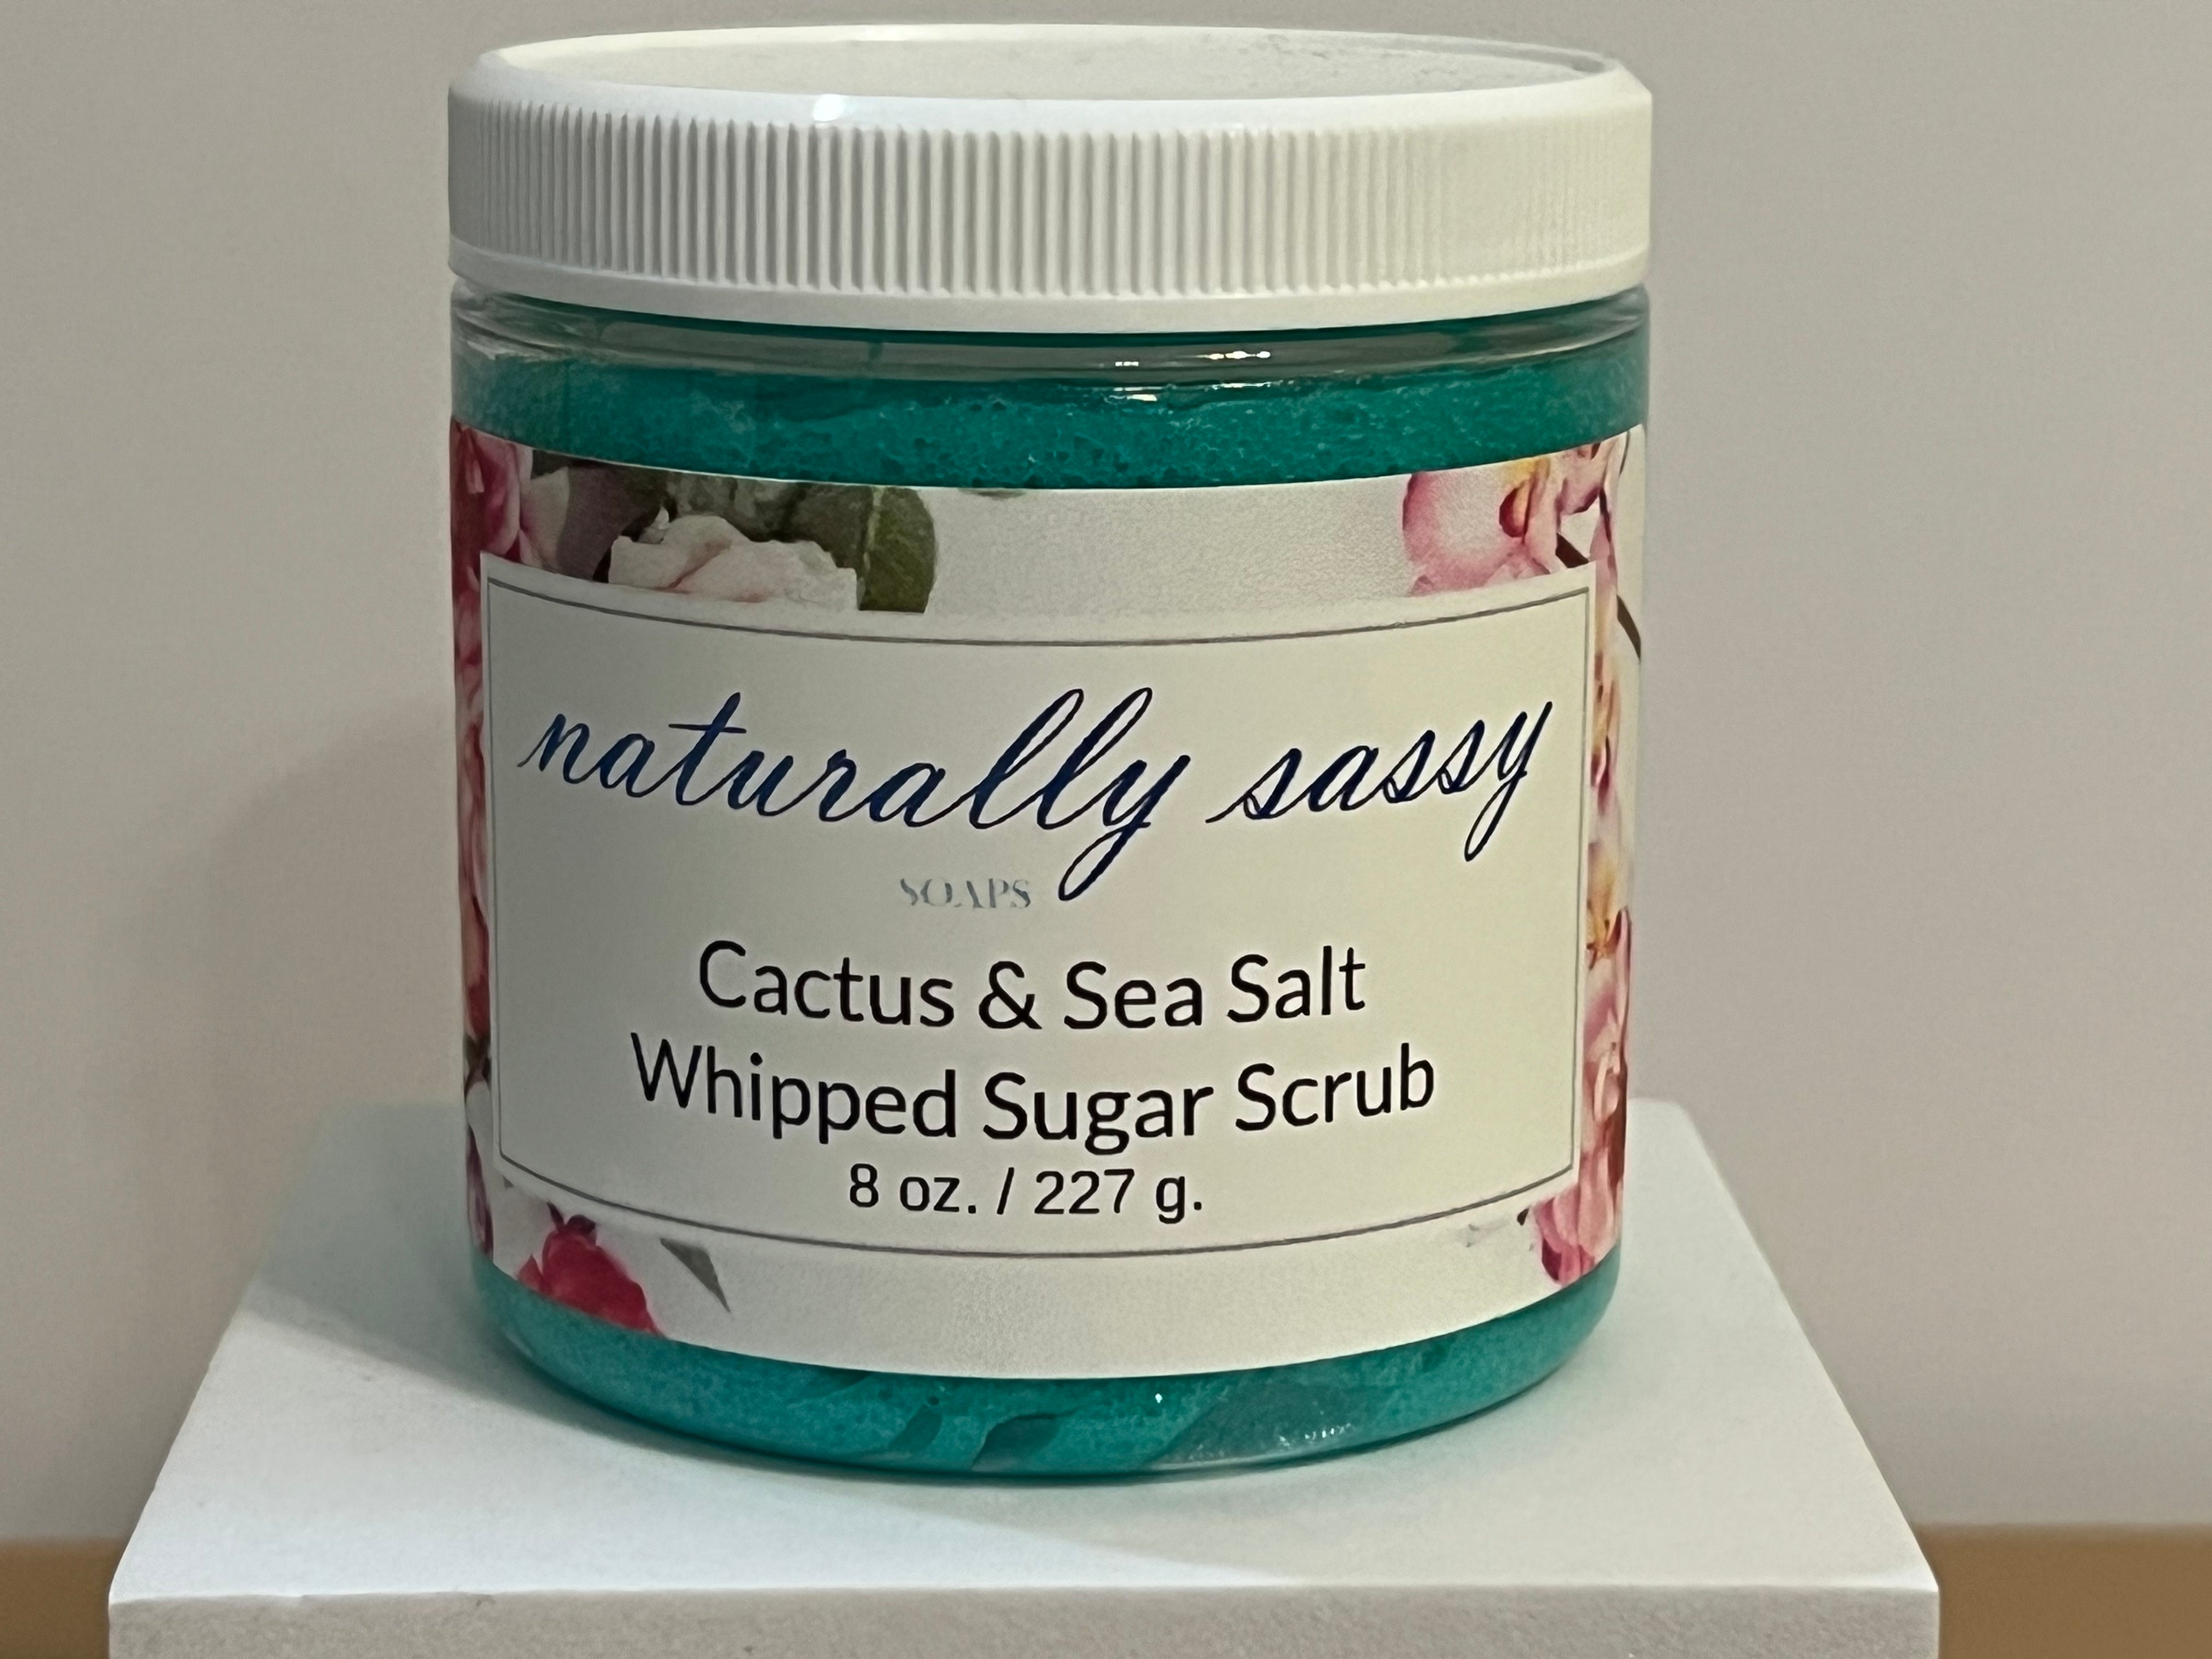 Cactus & Sea Salt Whipped Sugar Scrub